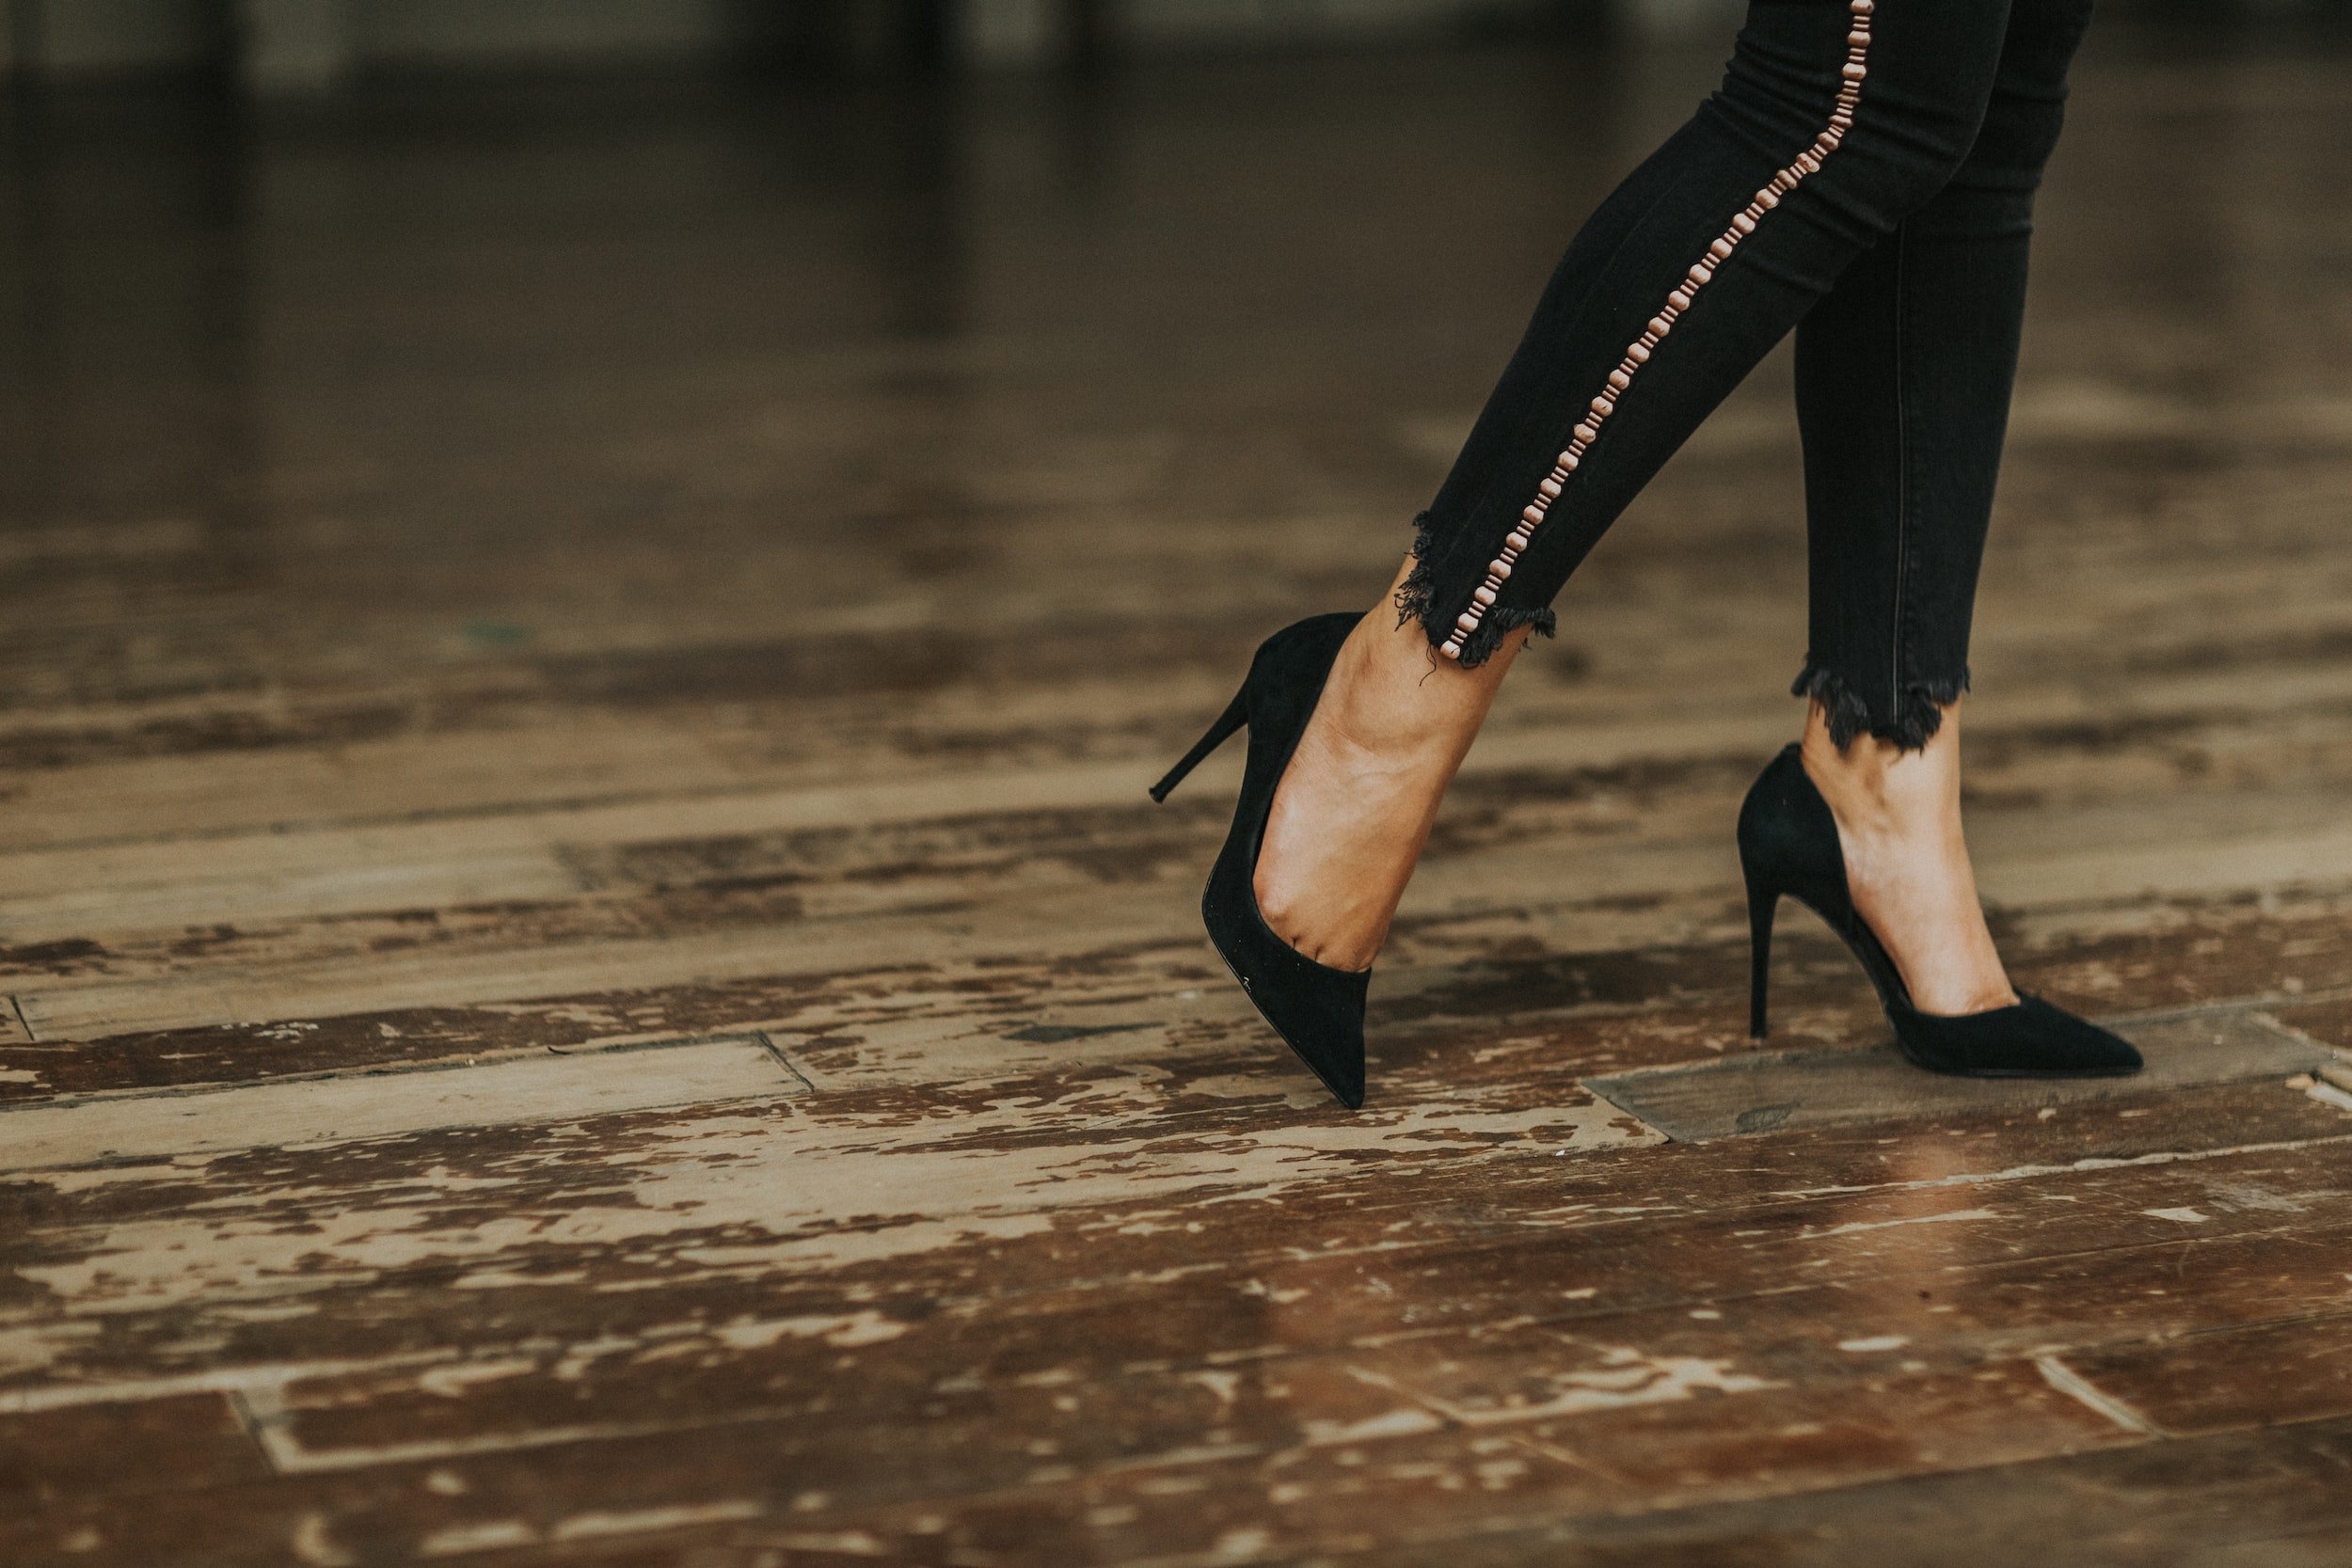 Why women love to wear heels!